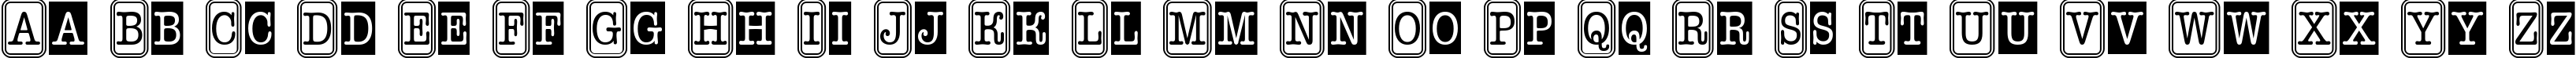 Пример написания английского алфавита шрифтом a_OldTyperNrCmCmb2